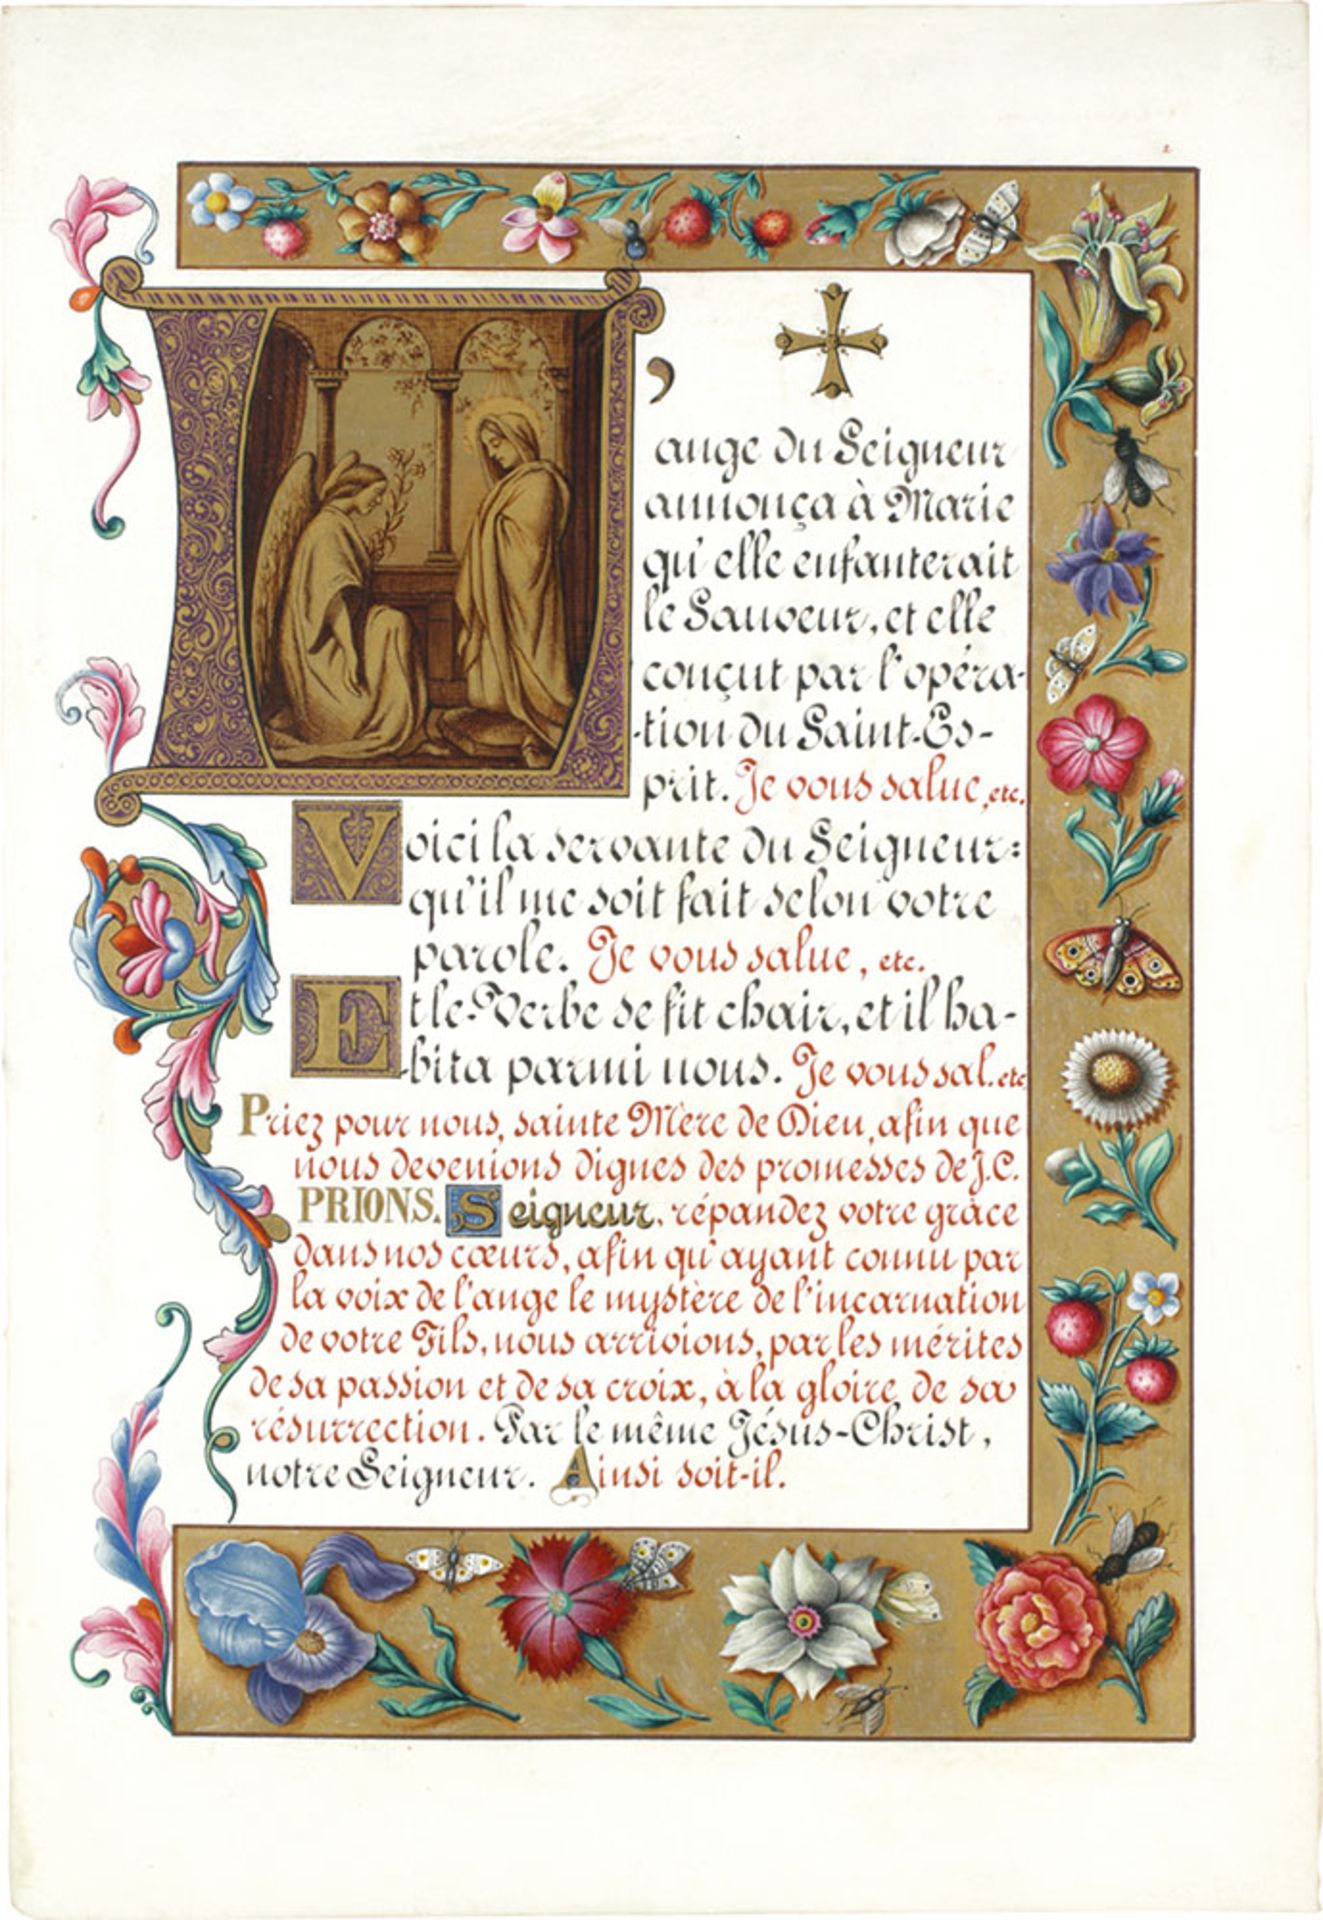 Les prières de Saint Bernard - Image 4 of 4